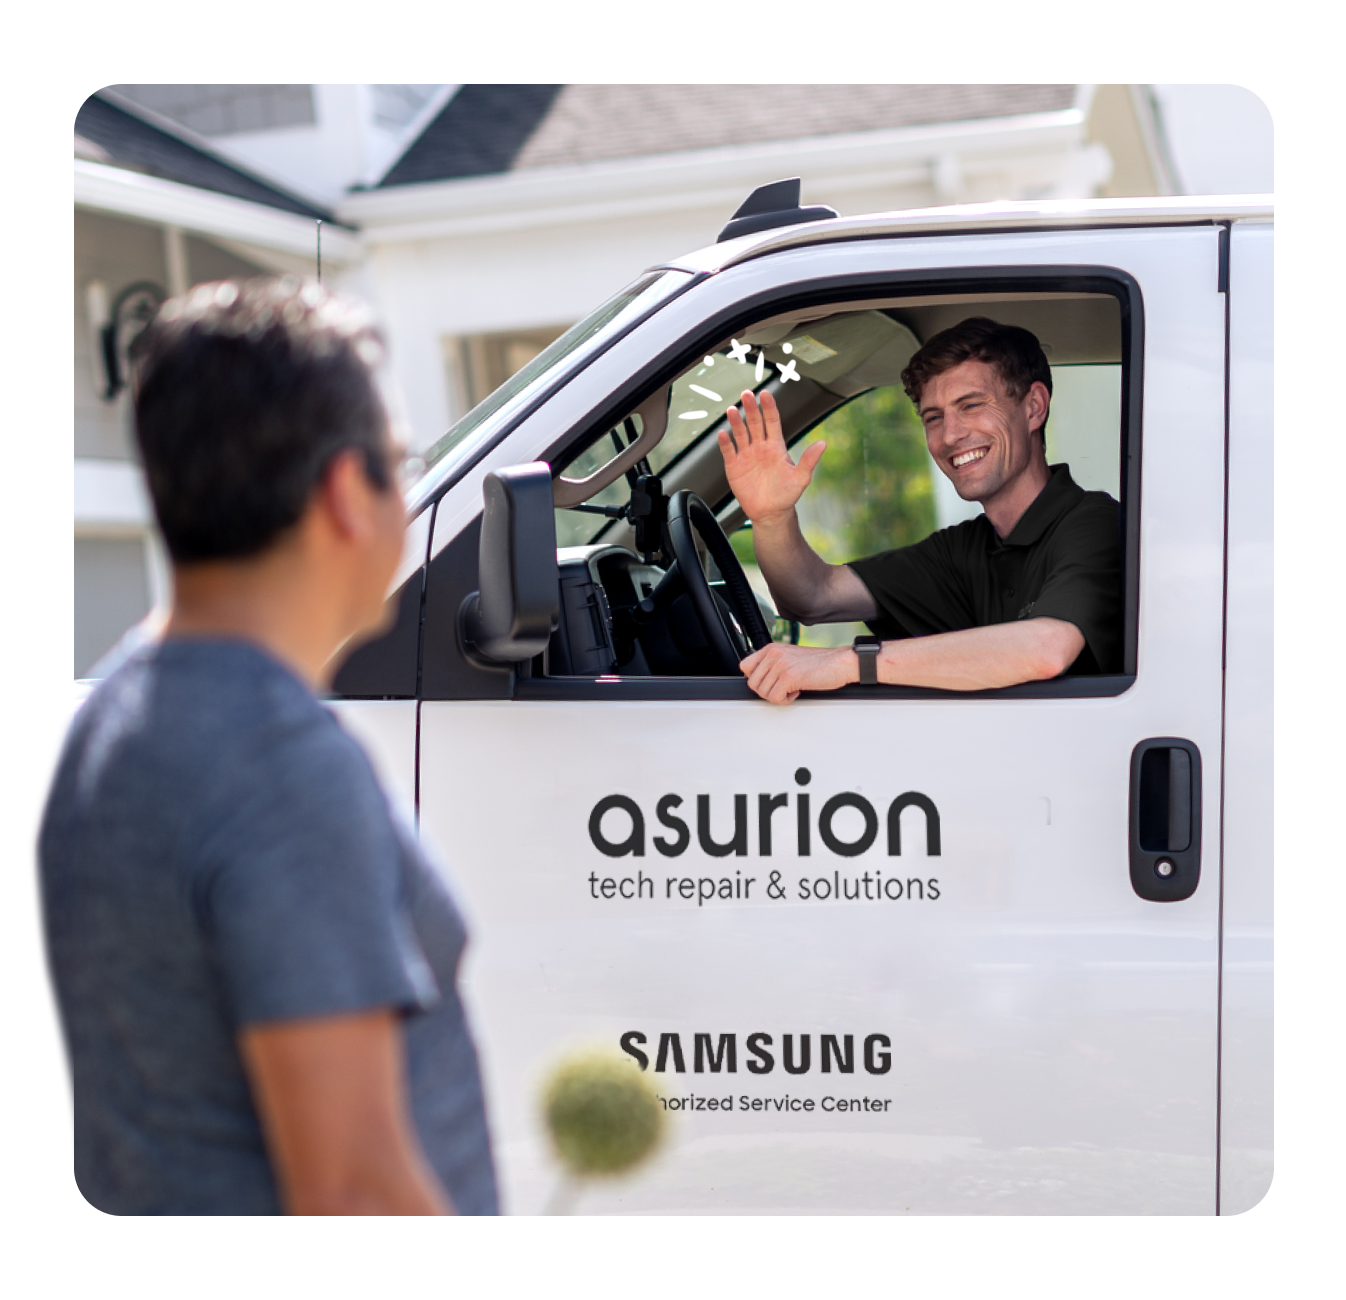 Asurion Tech Repair & Solutions remote repair van and expert arriving at location